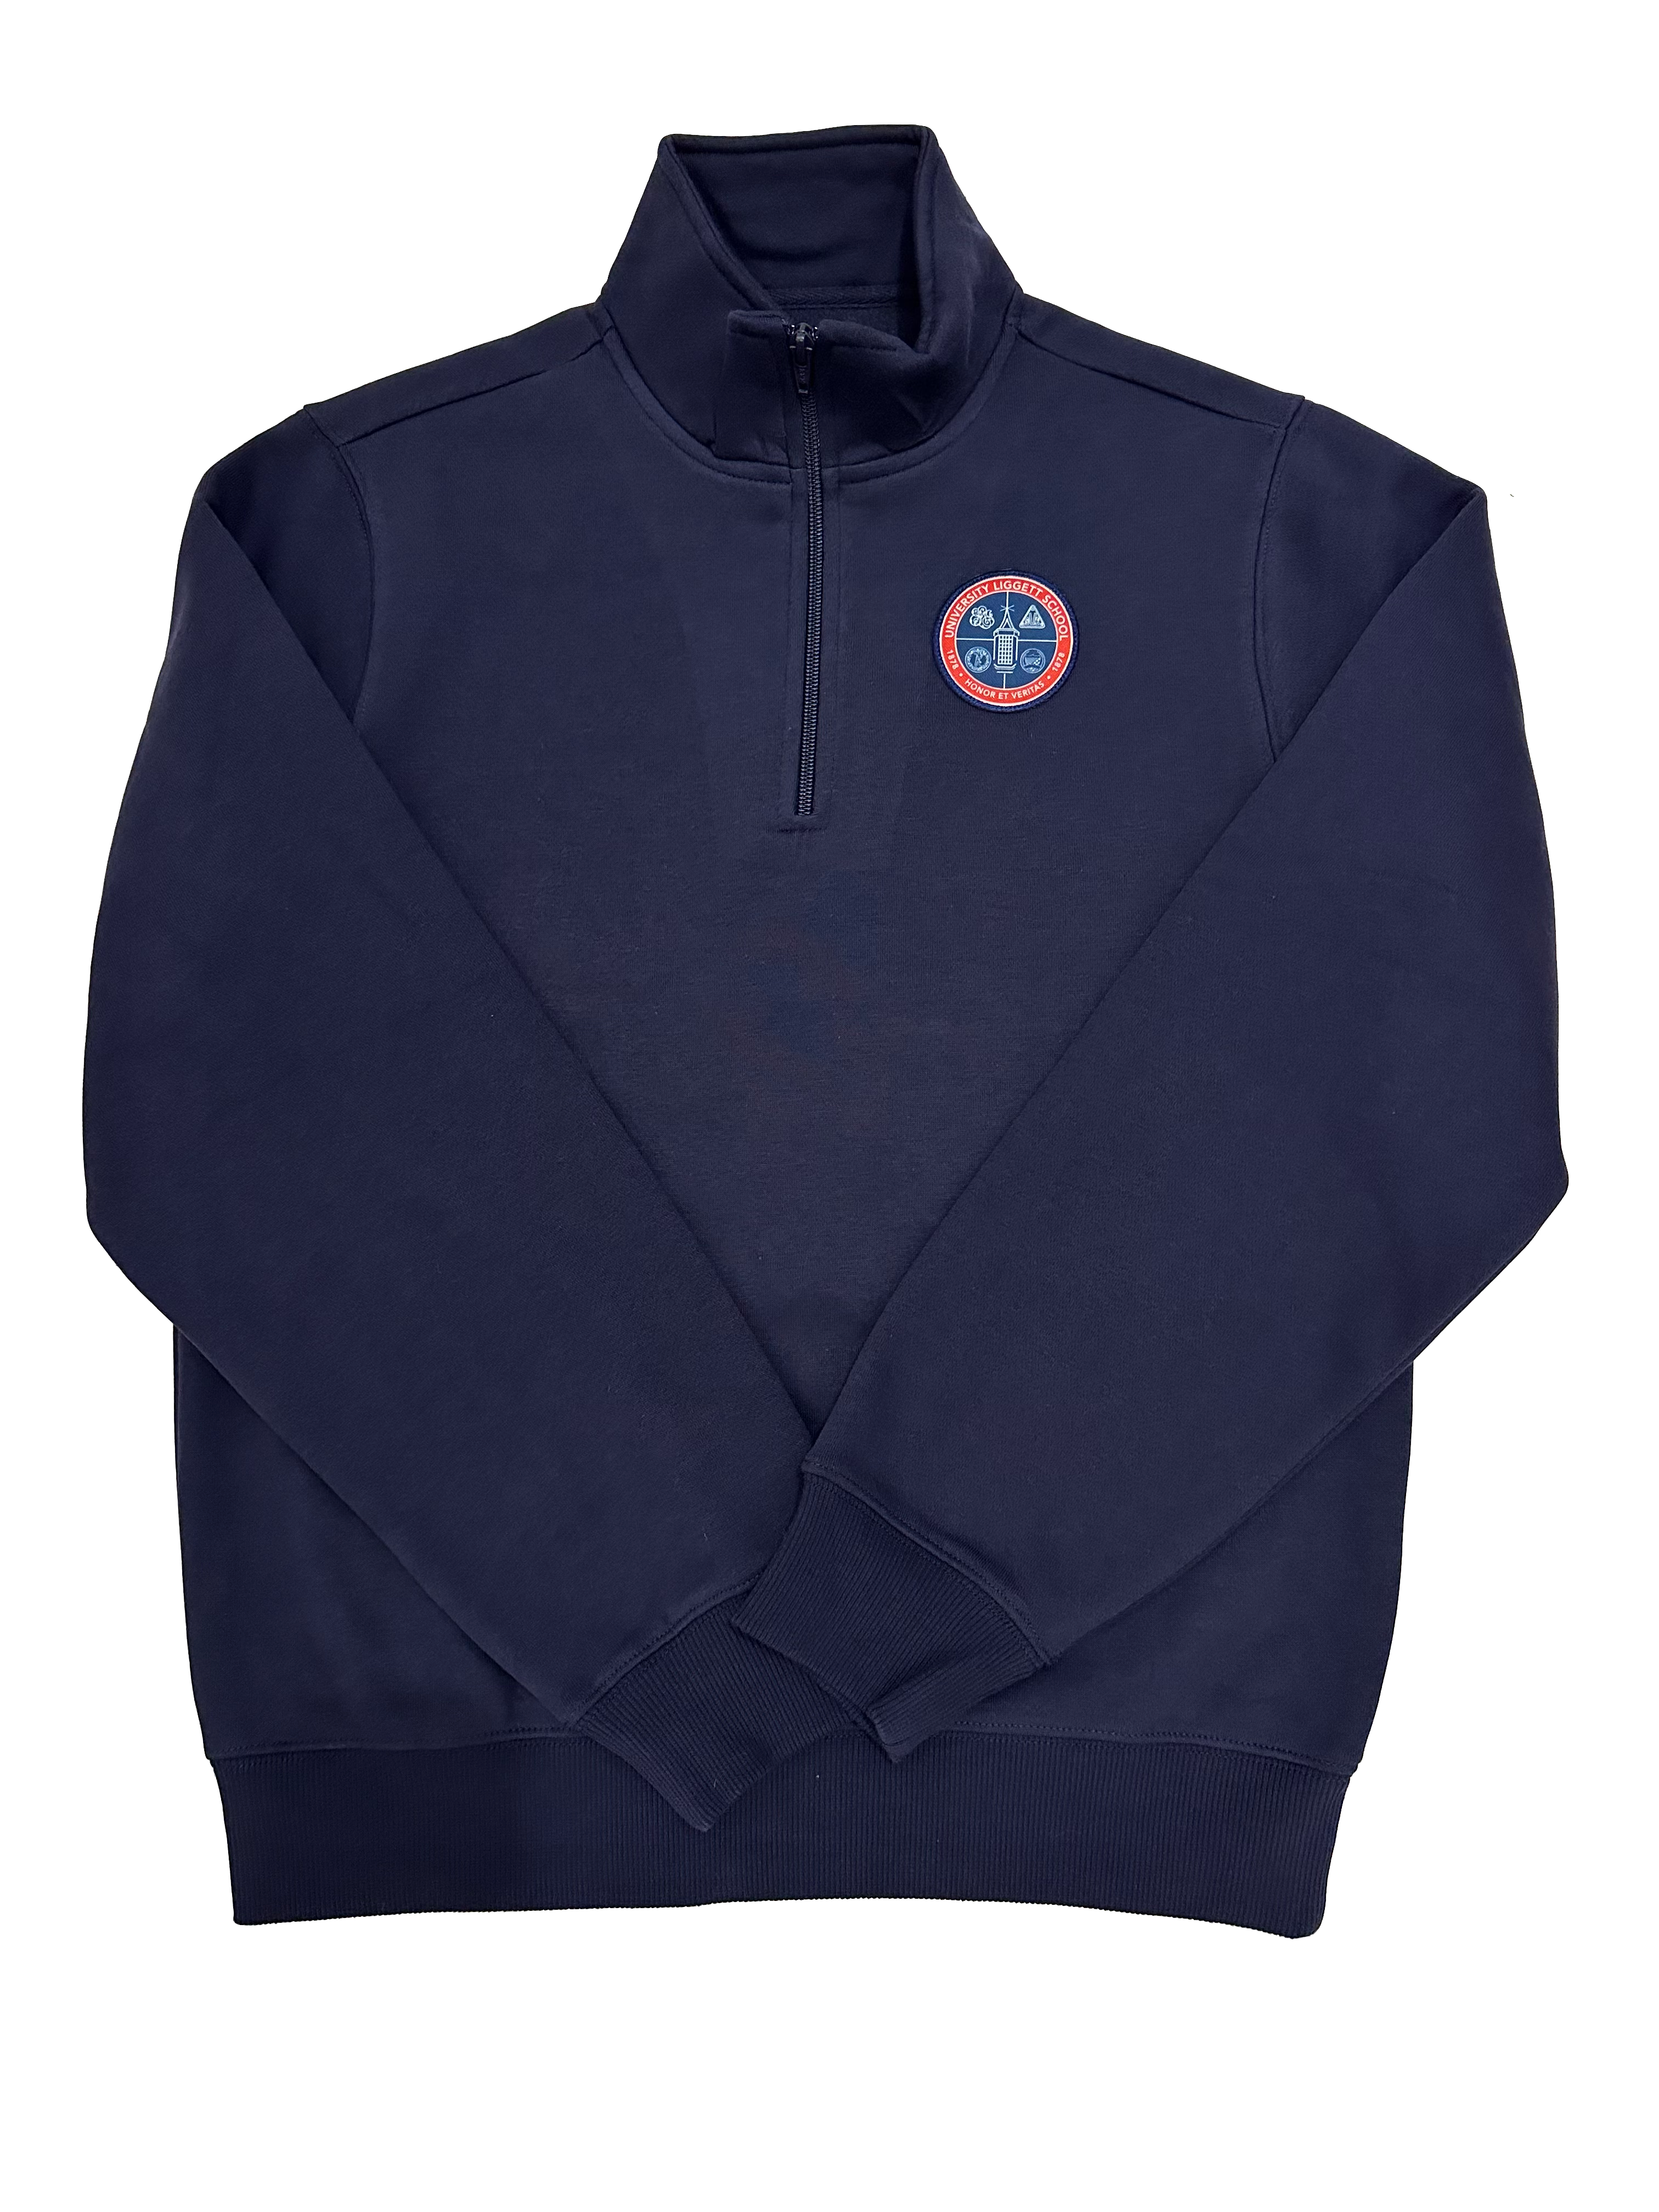 NEW Adult Quarter Zip Navy Sweatshirt with Crest Patch